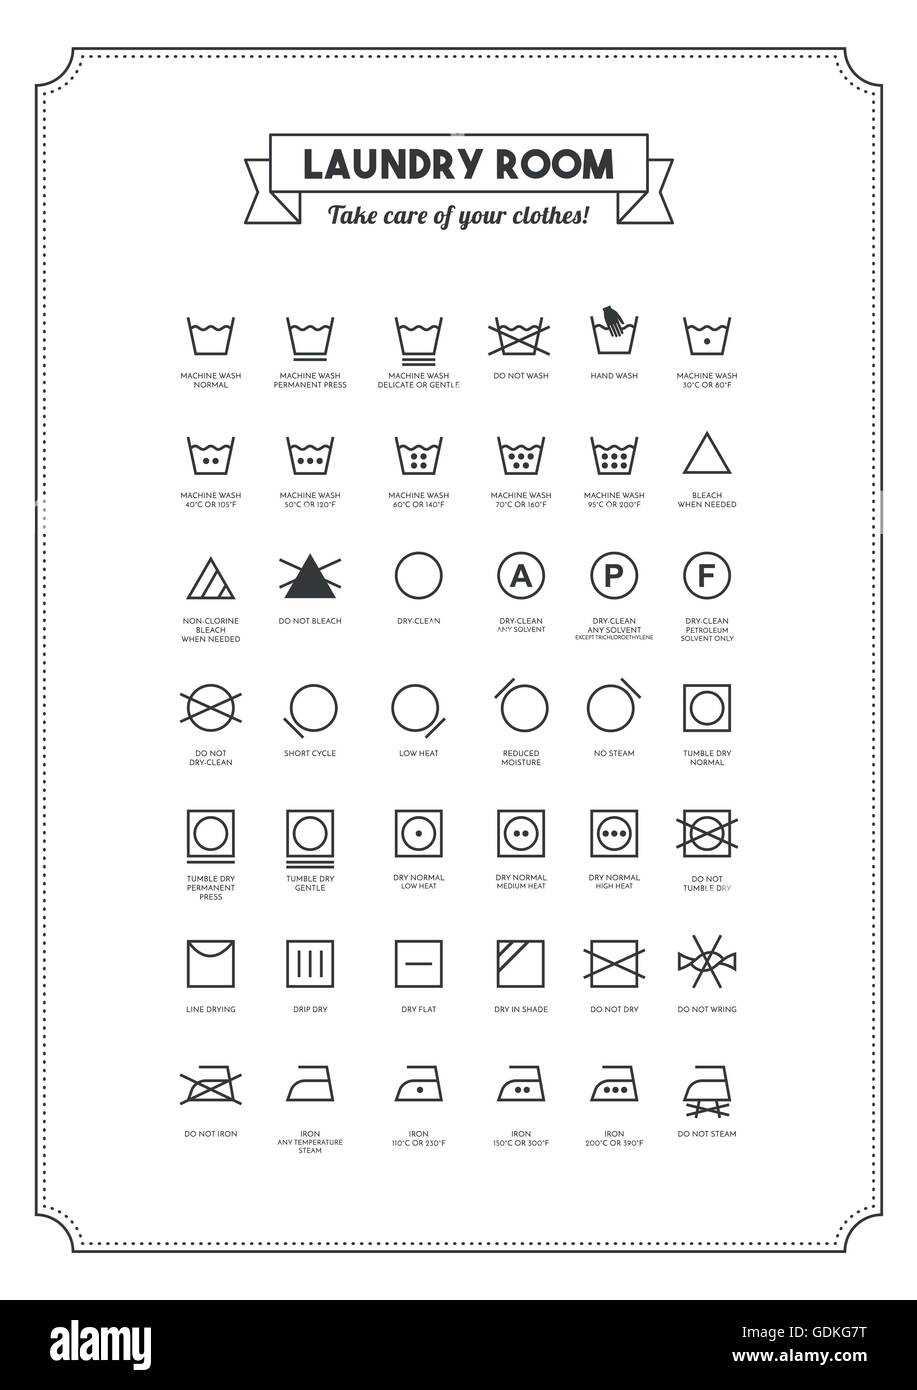 Laundry symbols Stock-Vektorgrafiken kaufen - Alamy